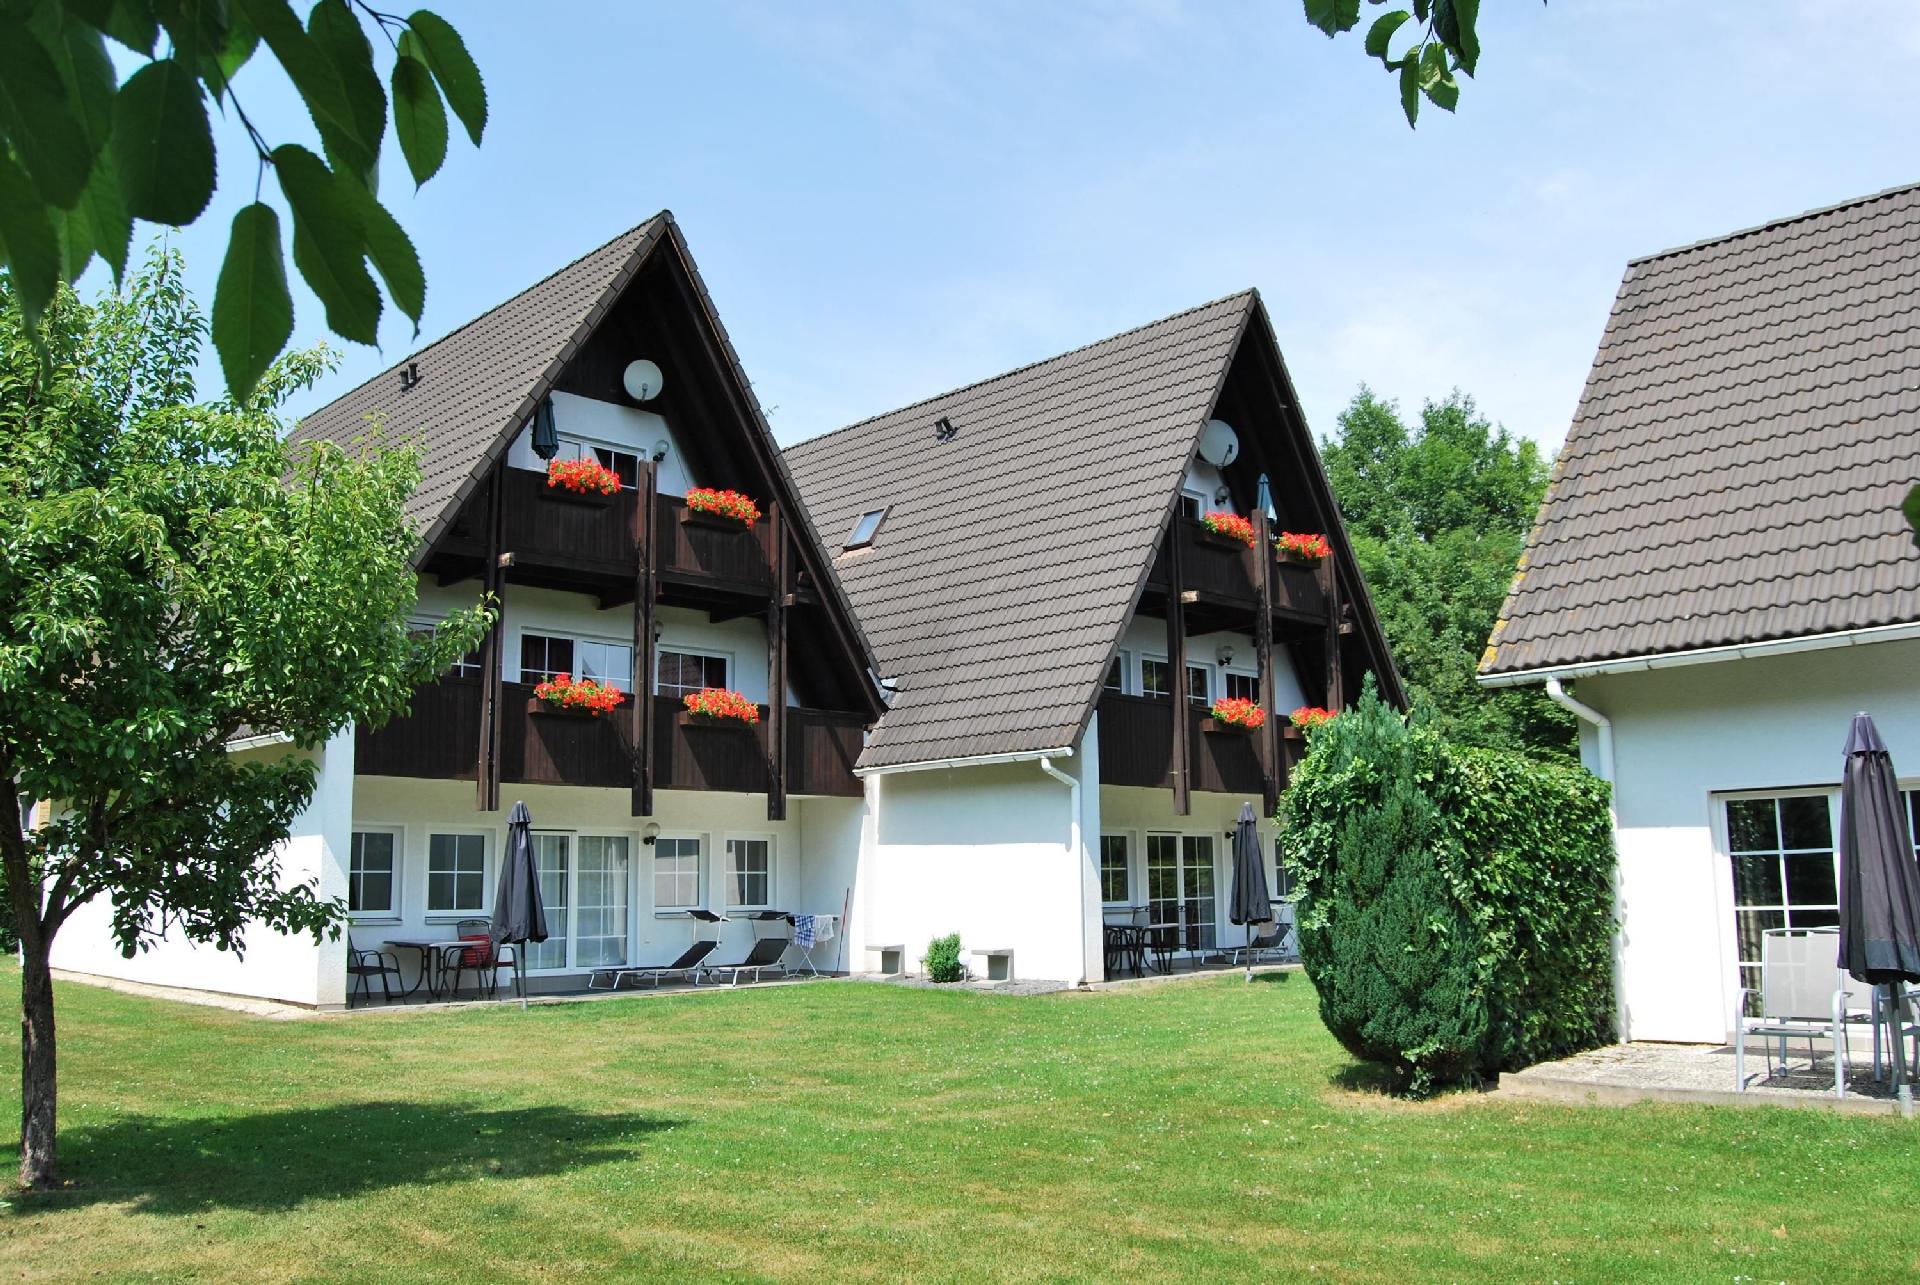 Wohnung in Walkenried mit Großem Balkon Ferienwohnung in Niedersachsen